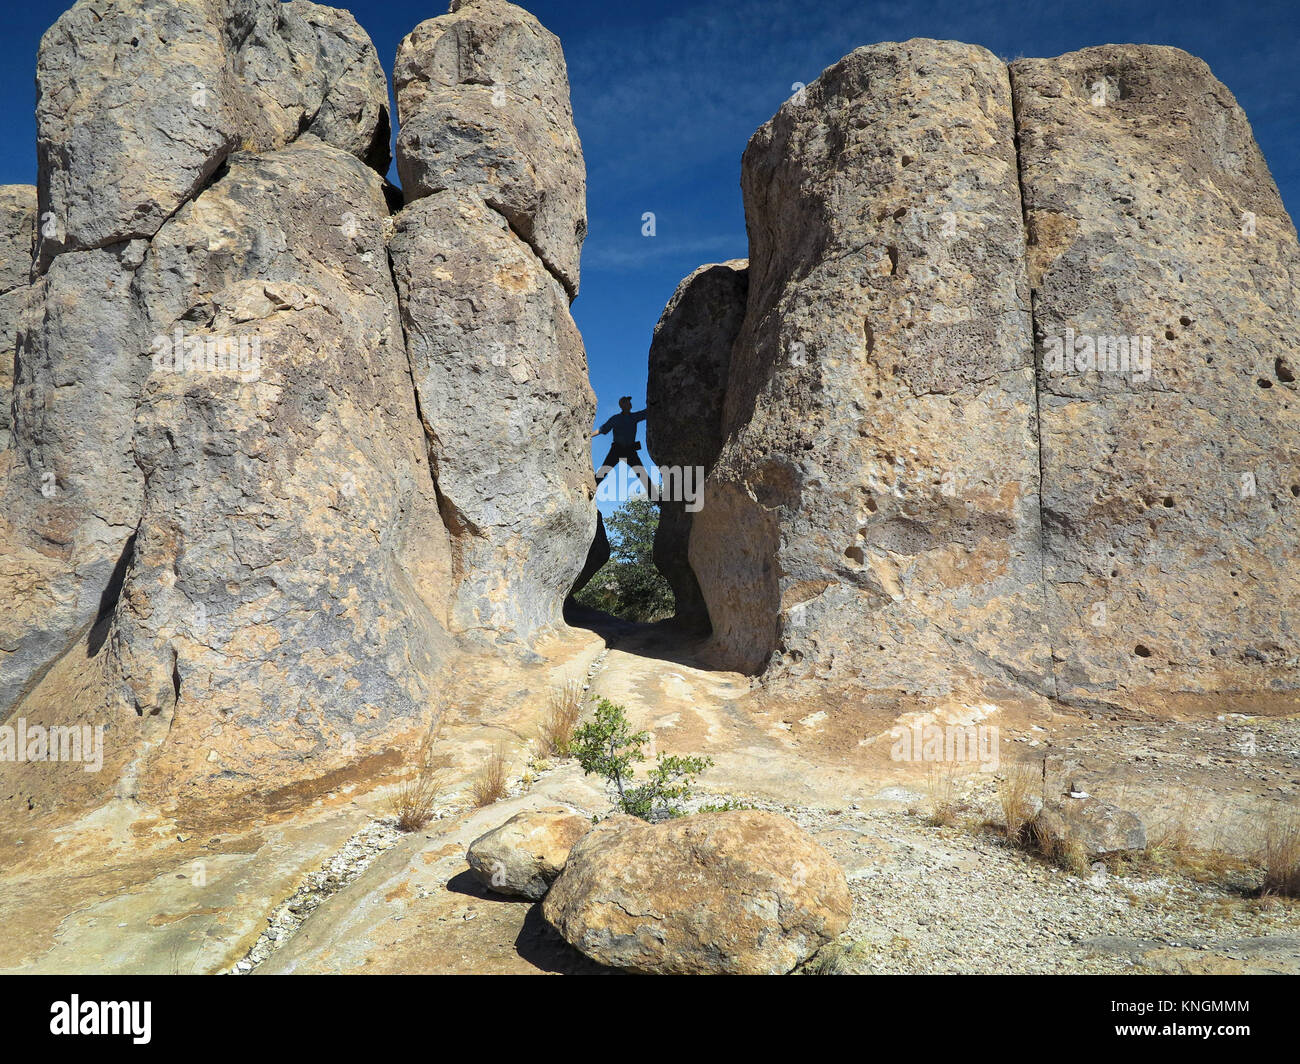 Geologische Formationen an der Stadt der Steine, NM. Klettern Between a Rock and a Hard Place. Stockfoto